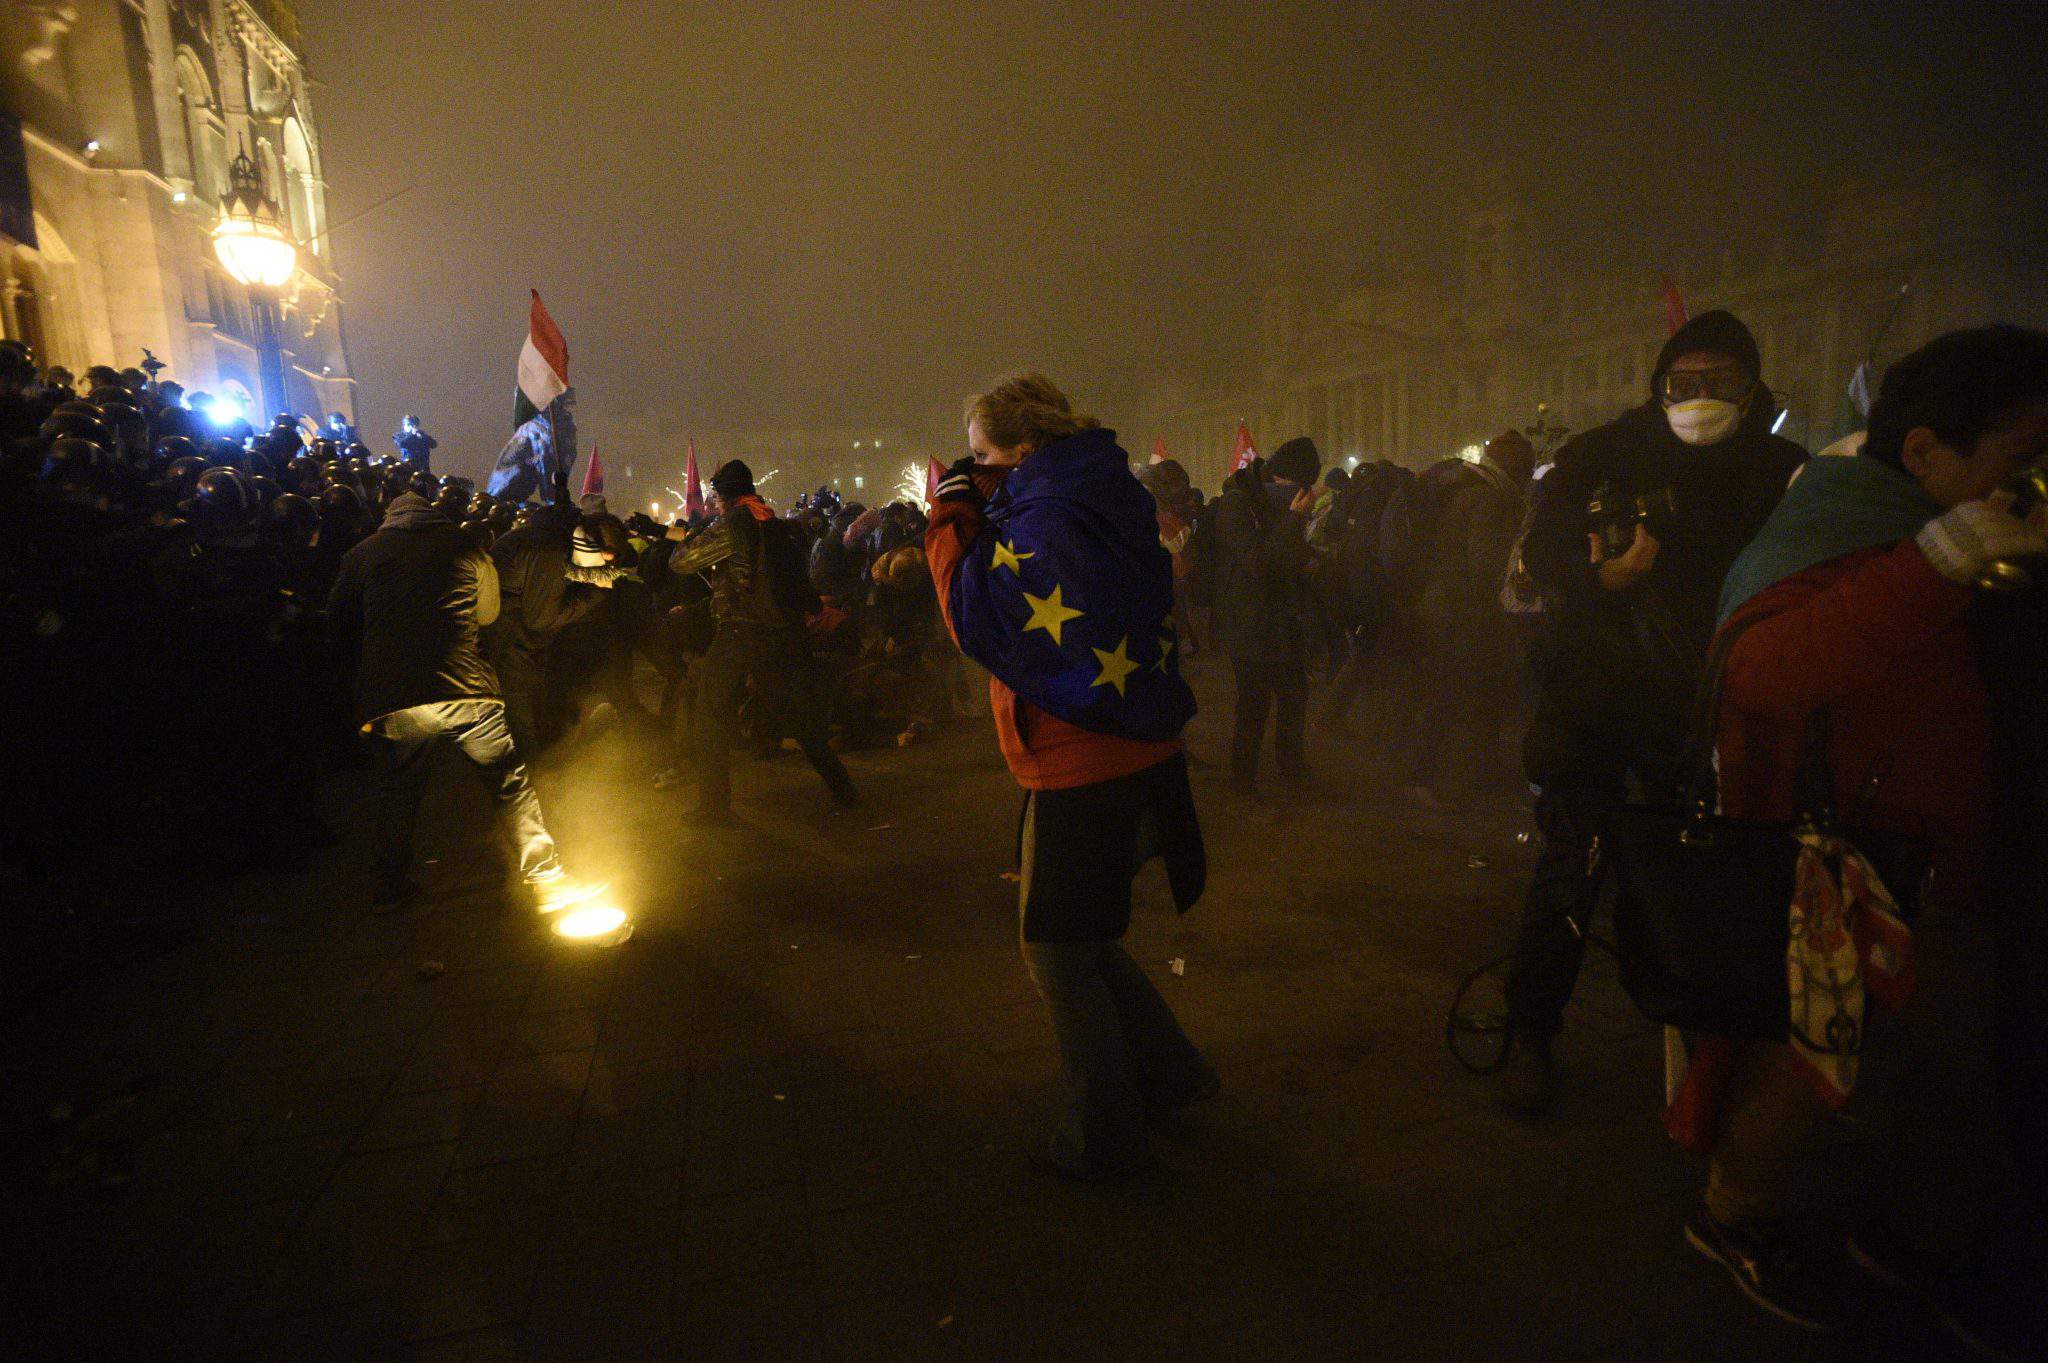 اشتباكات بين متظاهرين والشرطة قرب البرلمان المجري - صور